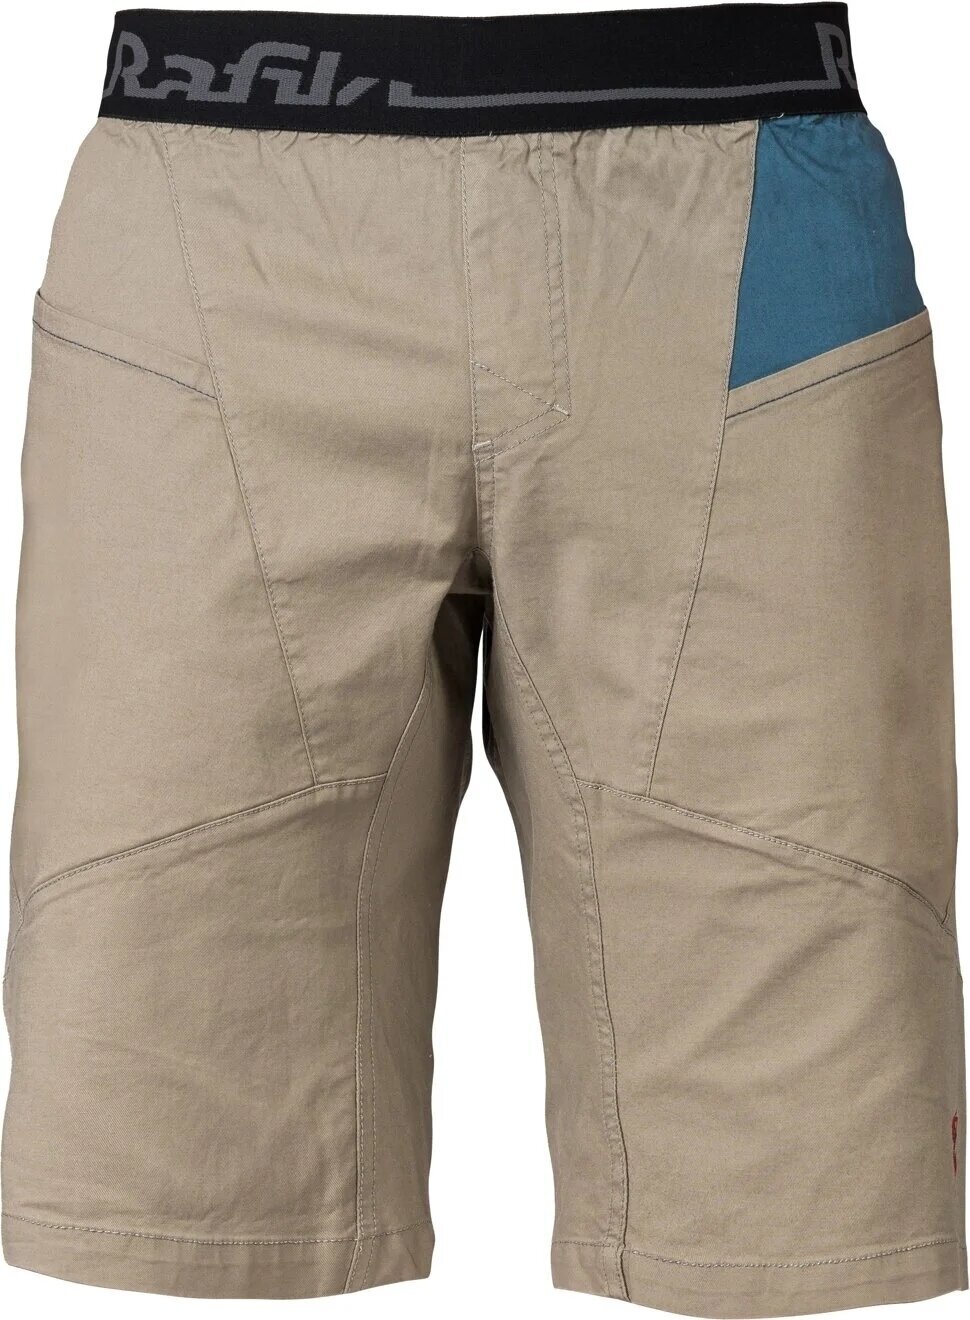 Outdoorové šortky Rafiki Megos Man Shorts Brindle/Stargazer M Outdoorové šortky